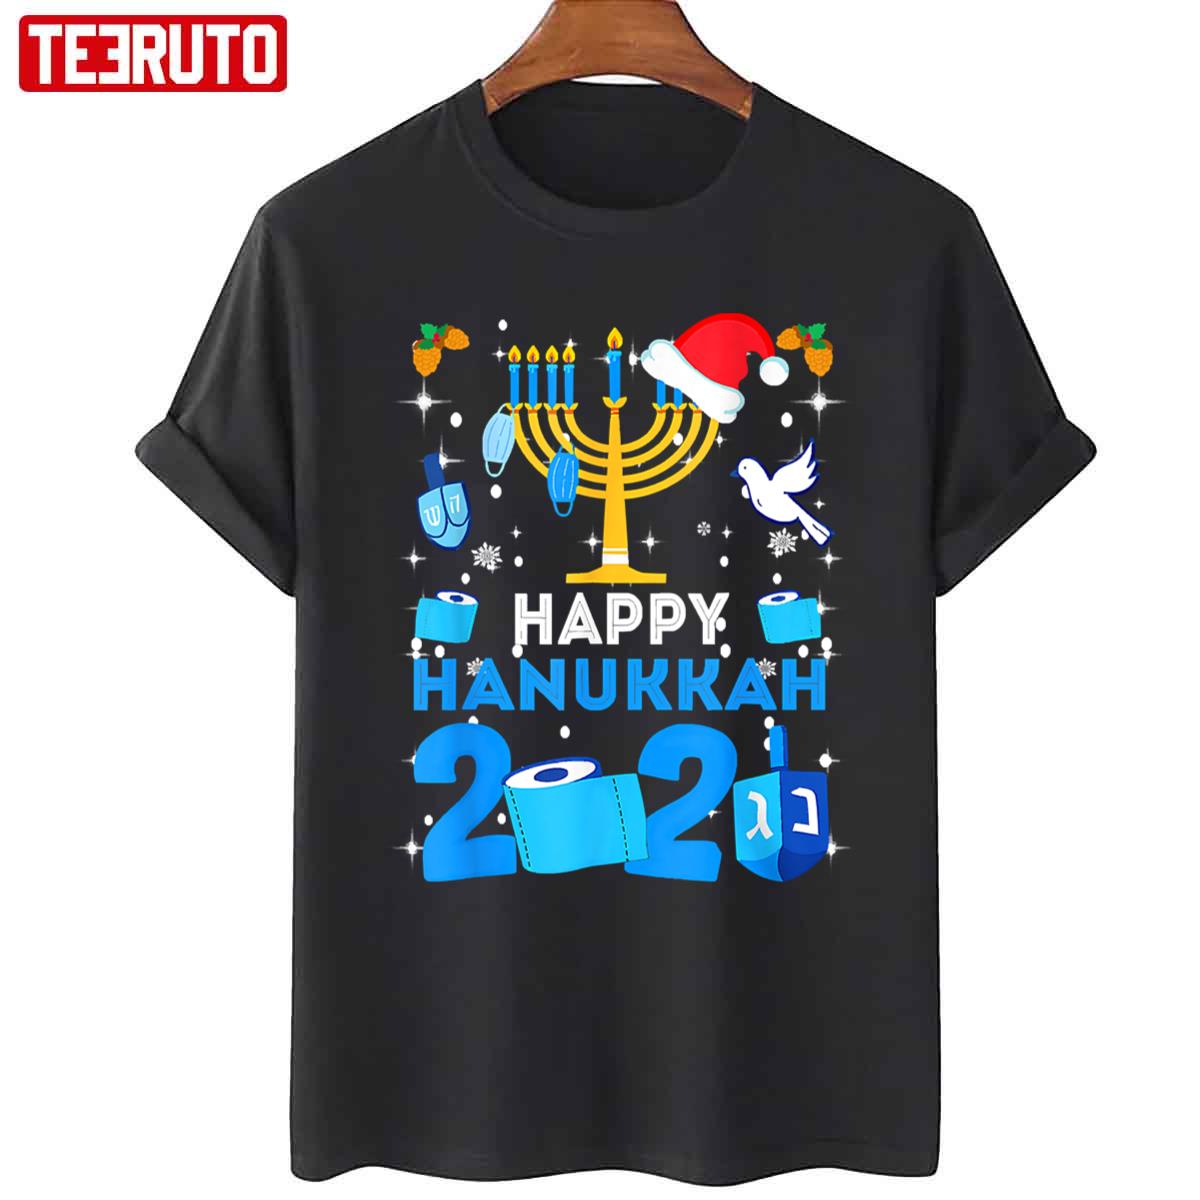 Happy Hanukkah 2021 Quarantine Unisex T-Shirt